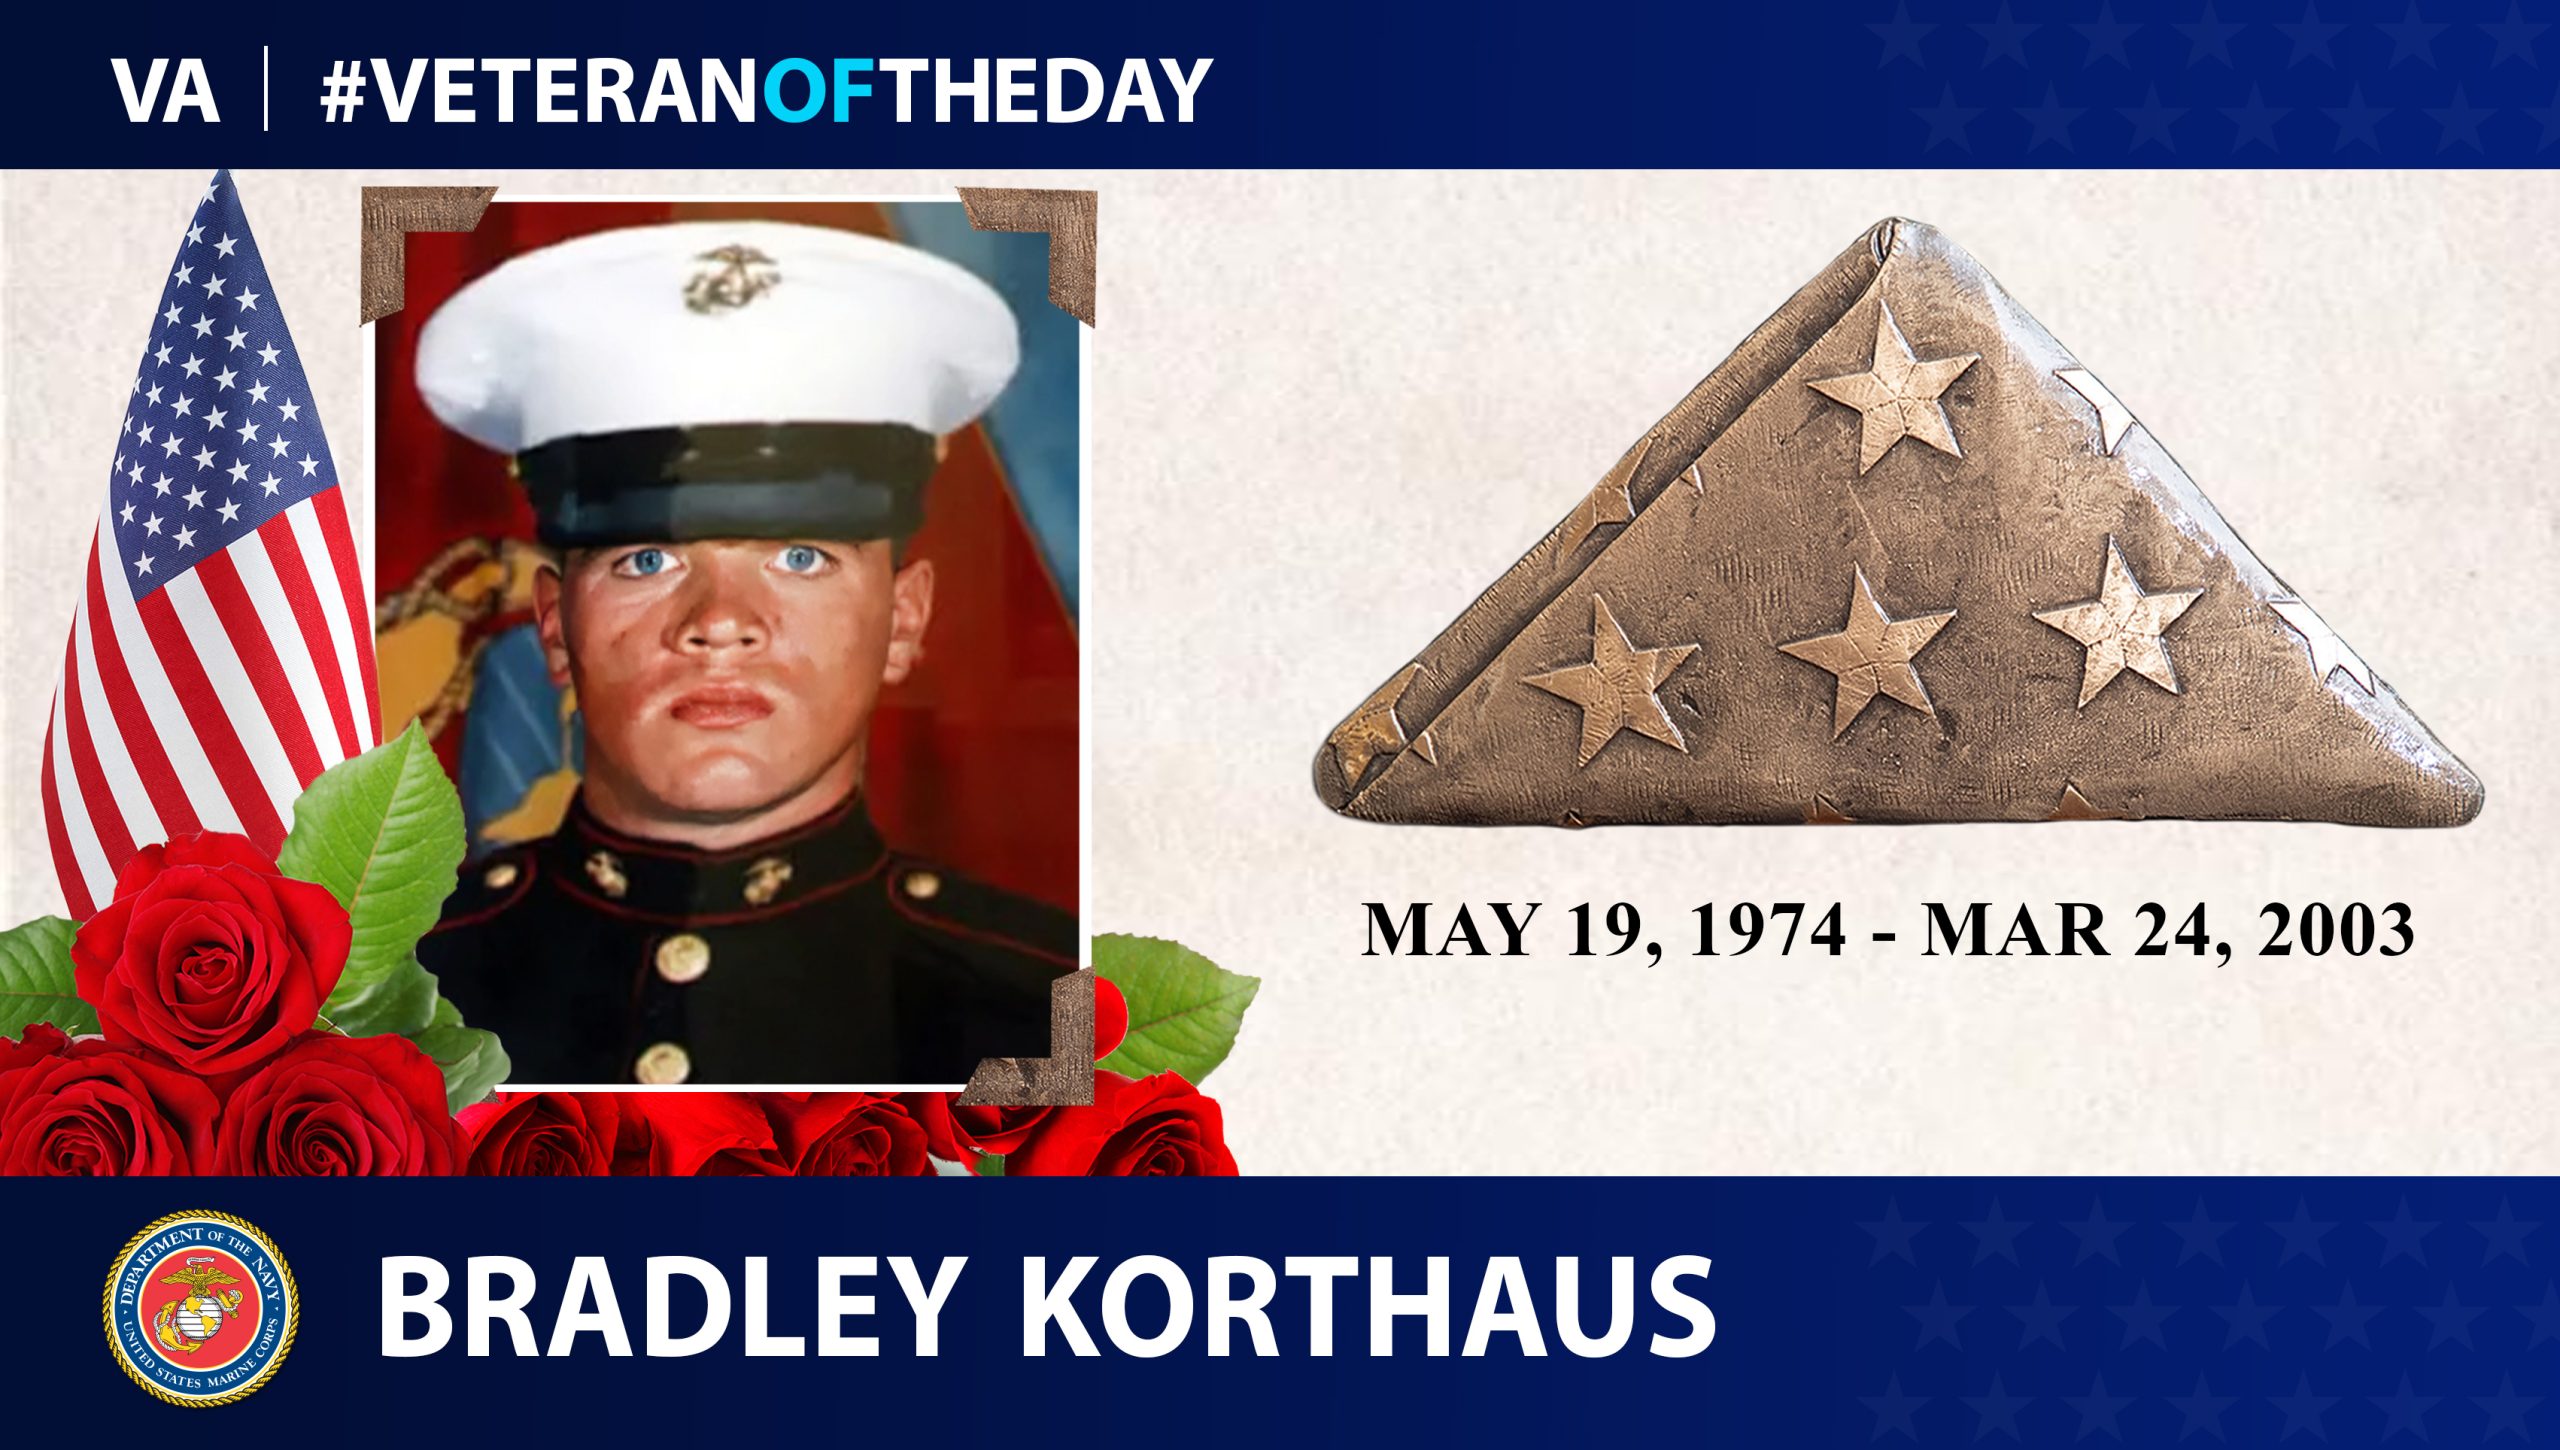 Today's #VeteranOfTheDay is Marine Corps Operation Iraqi Freedom Veteran Bradley Korthaus.